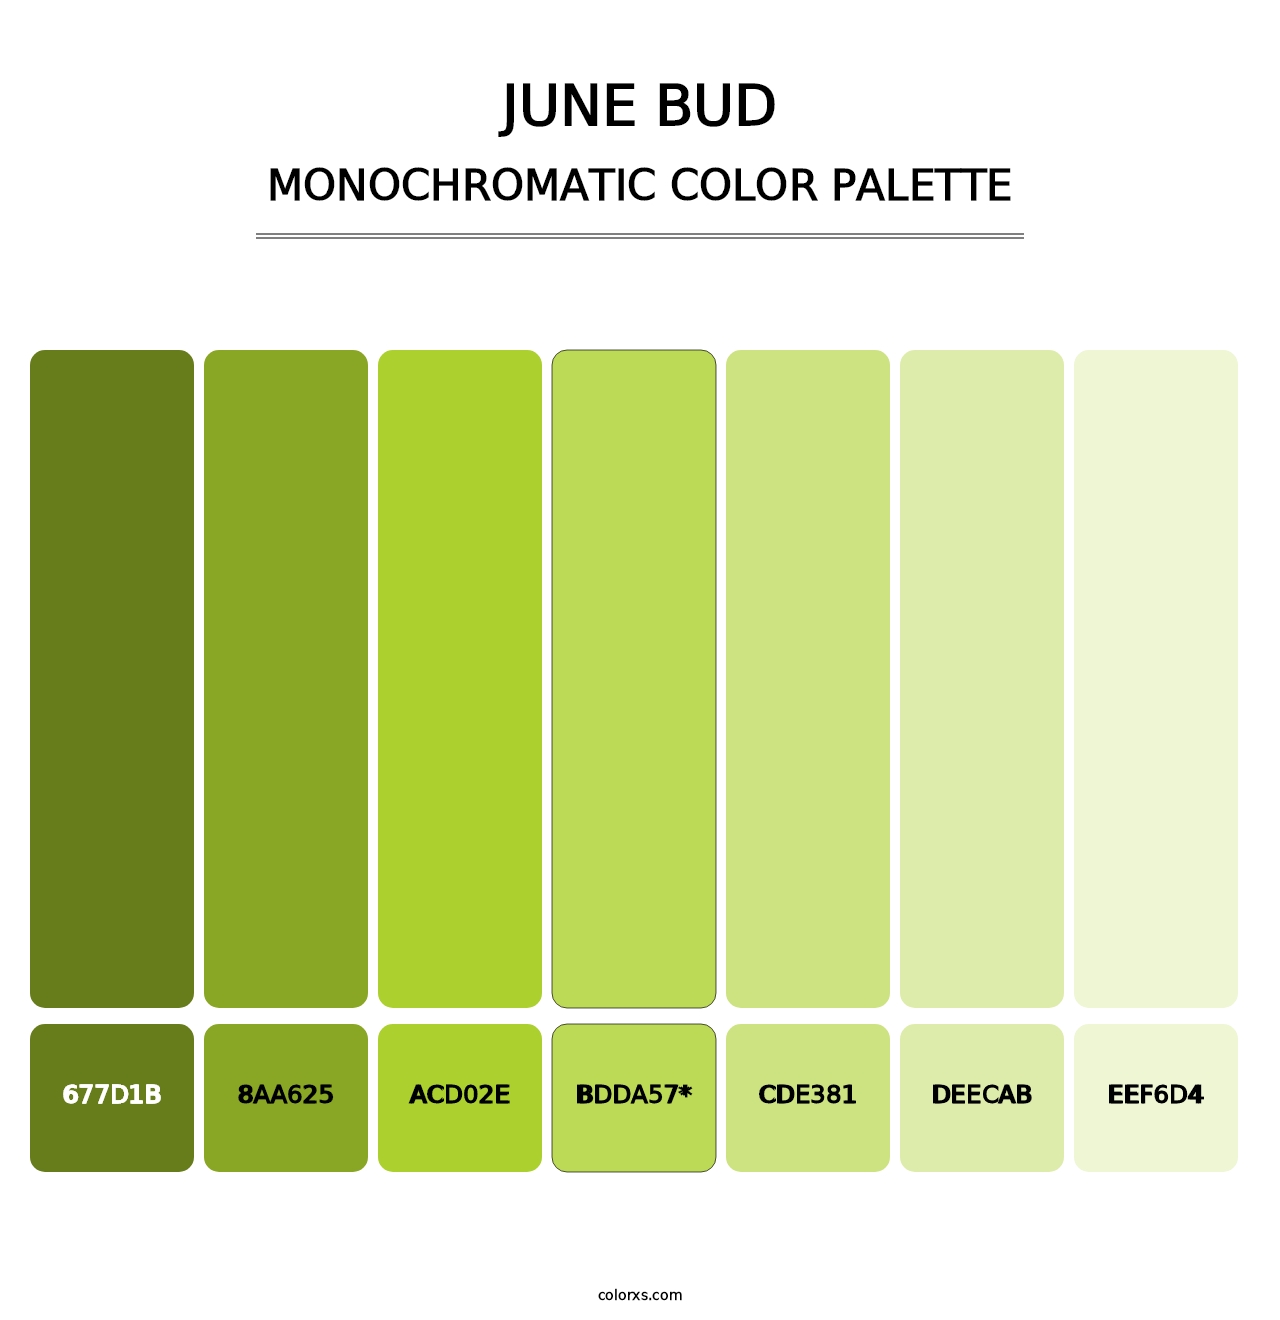 June Bud - Monochromatic Color Palette